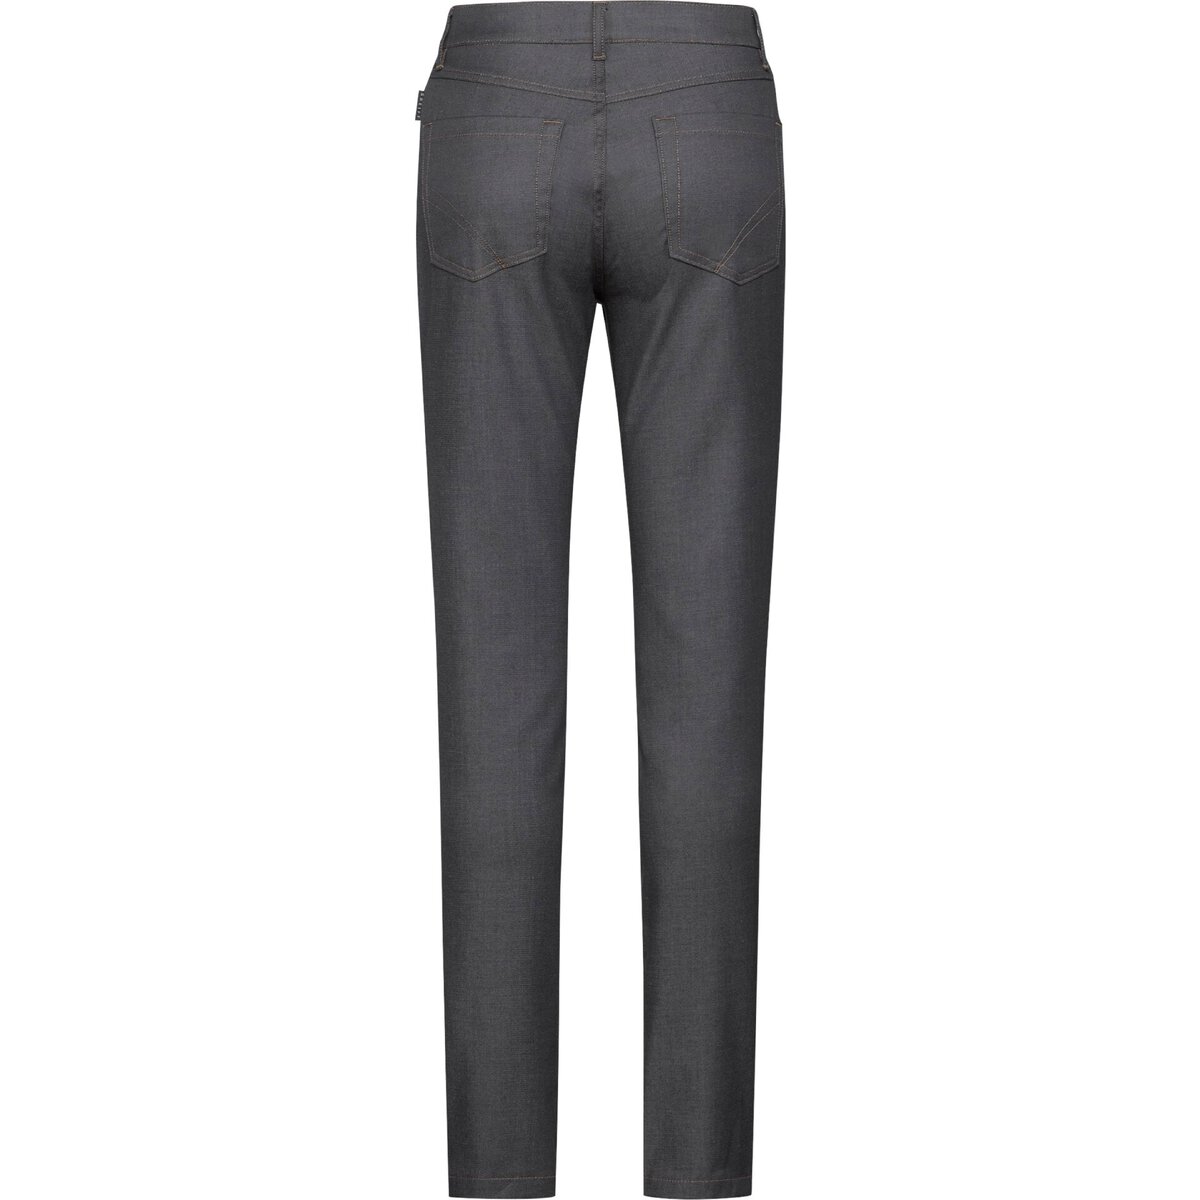 Damen-Kochhose Jeans-Style Größe 34 (1)